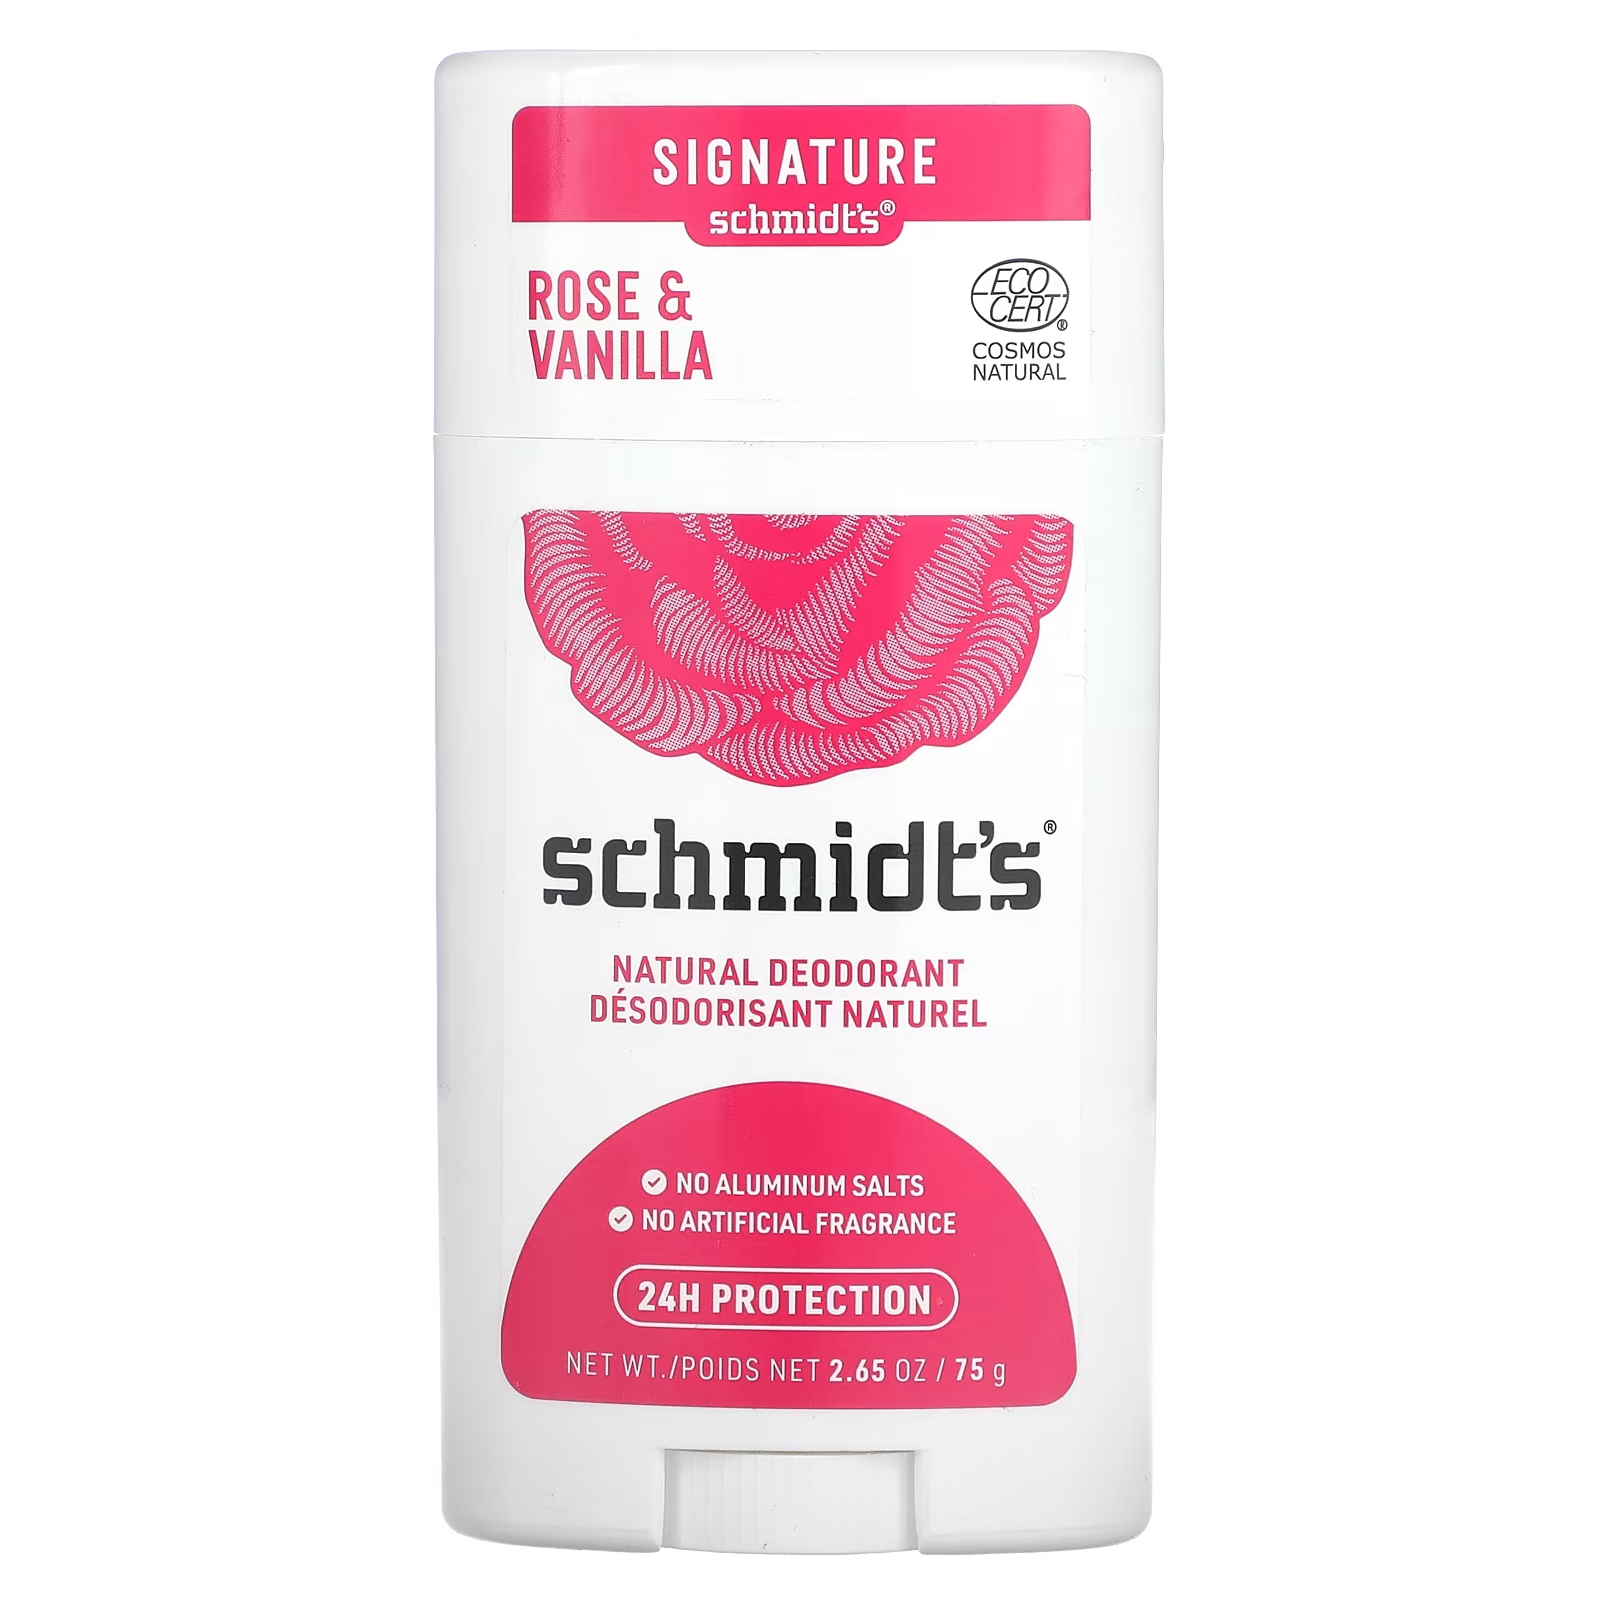 Натуральный дезодорант Schmidt's «Роза и ваниль», 2,65 унции (75 г) schmidt s натуральный дезодорант лаванда и шалфей 75 г 2 65 унции